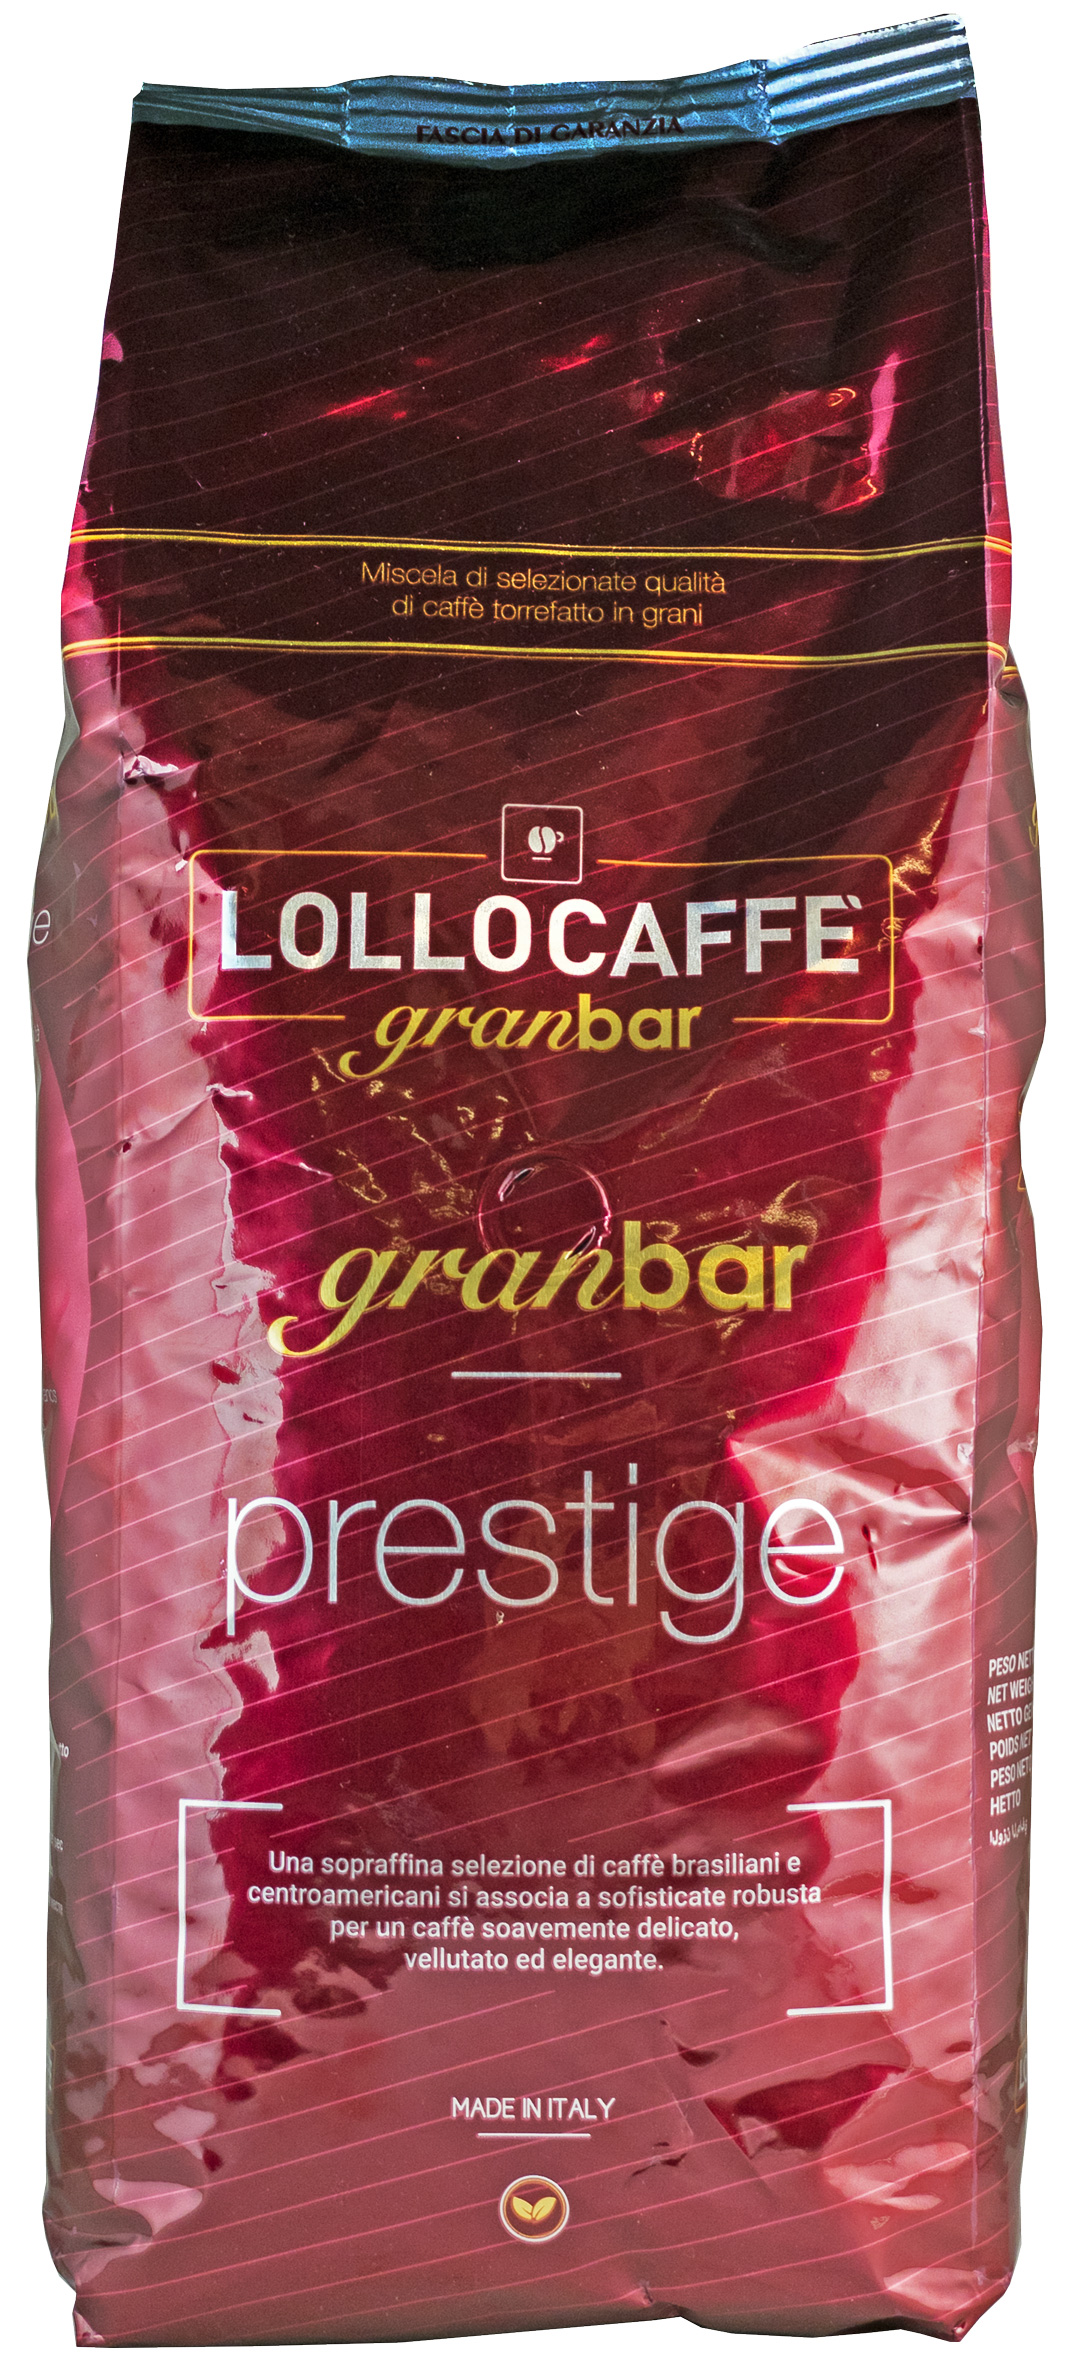 Lollo Caffè Gran Bar Prestige 1000g » Acquista ora!